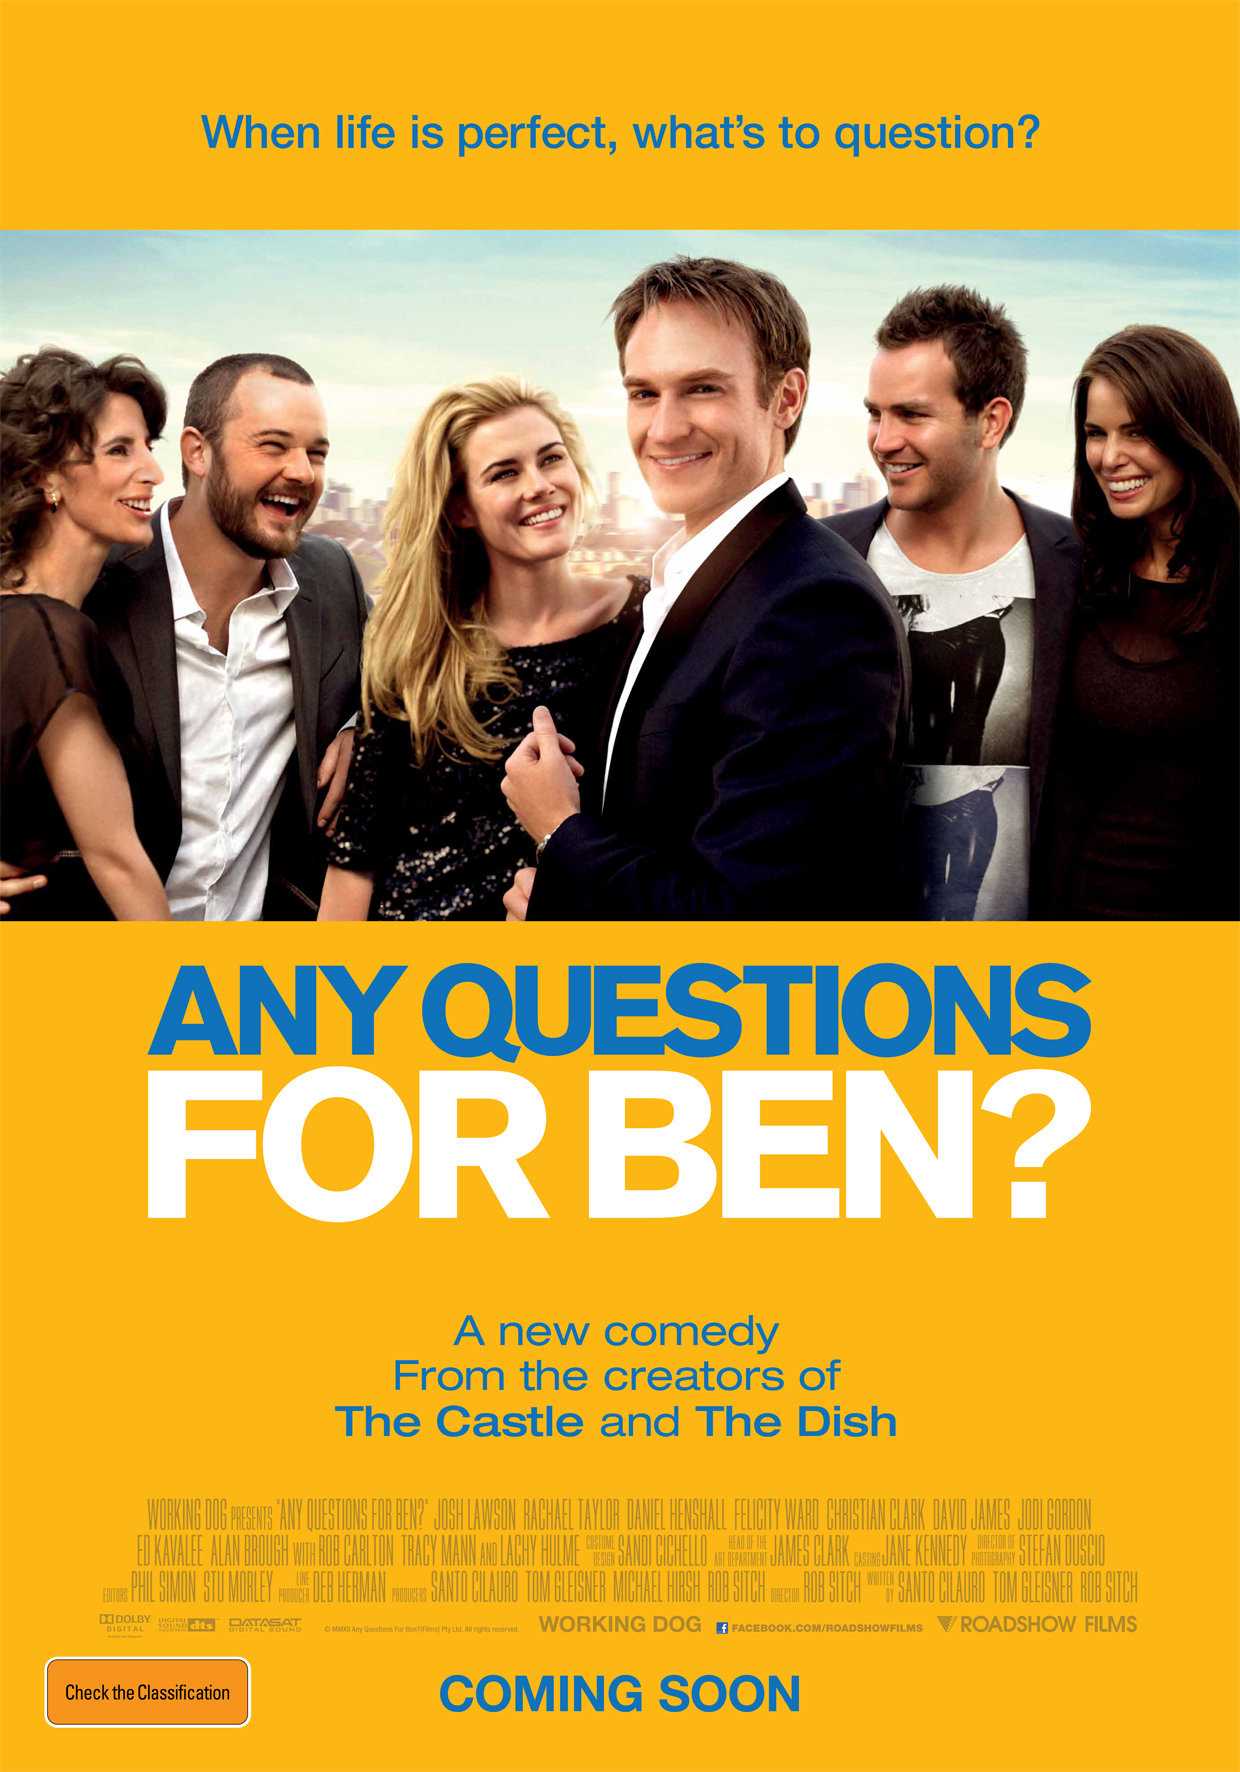 Ai hỏi gì ben không? - Any questions for ben?